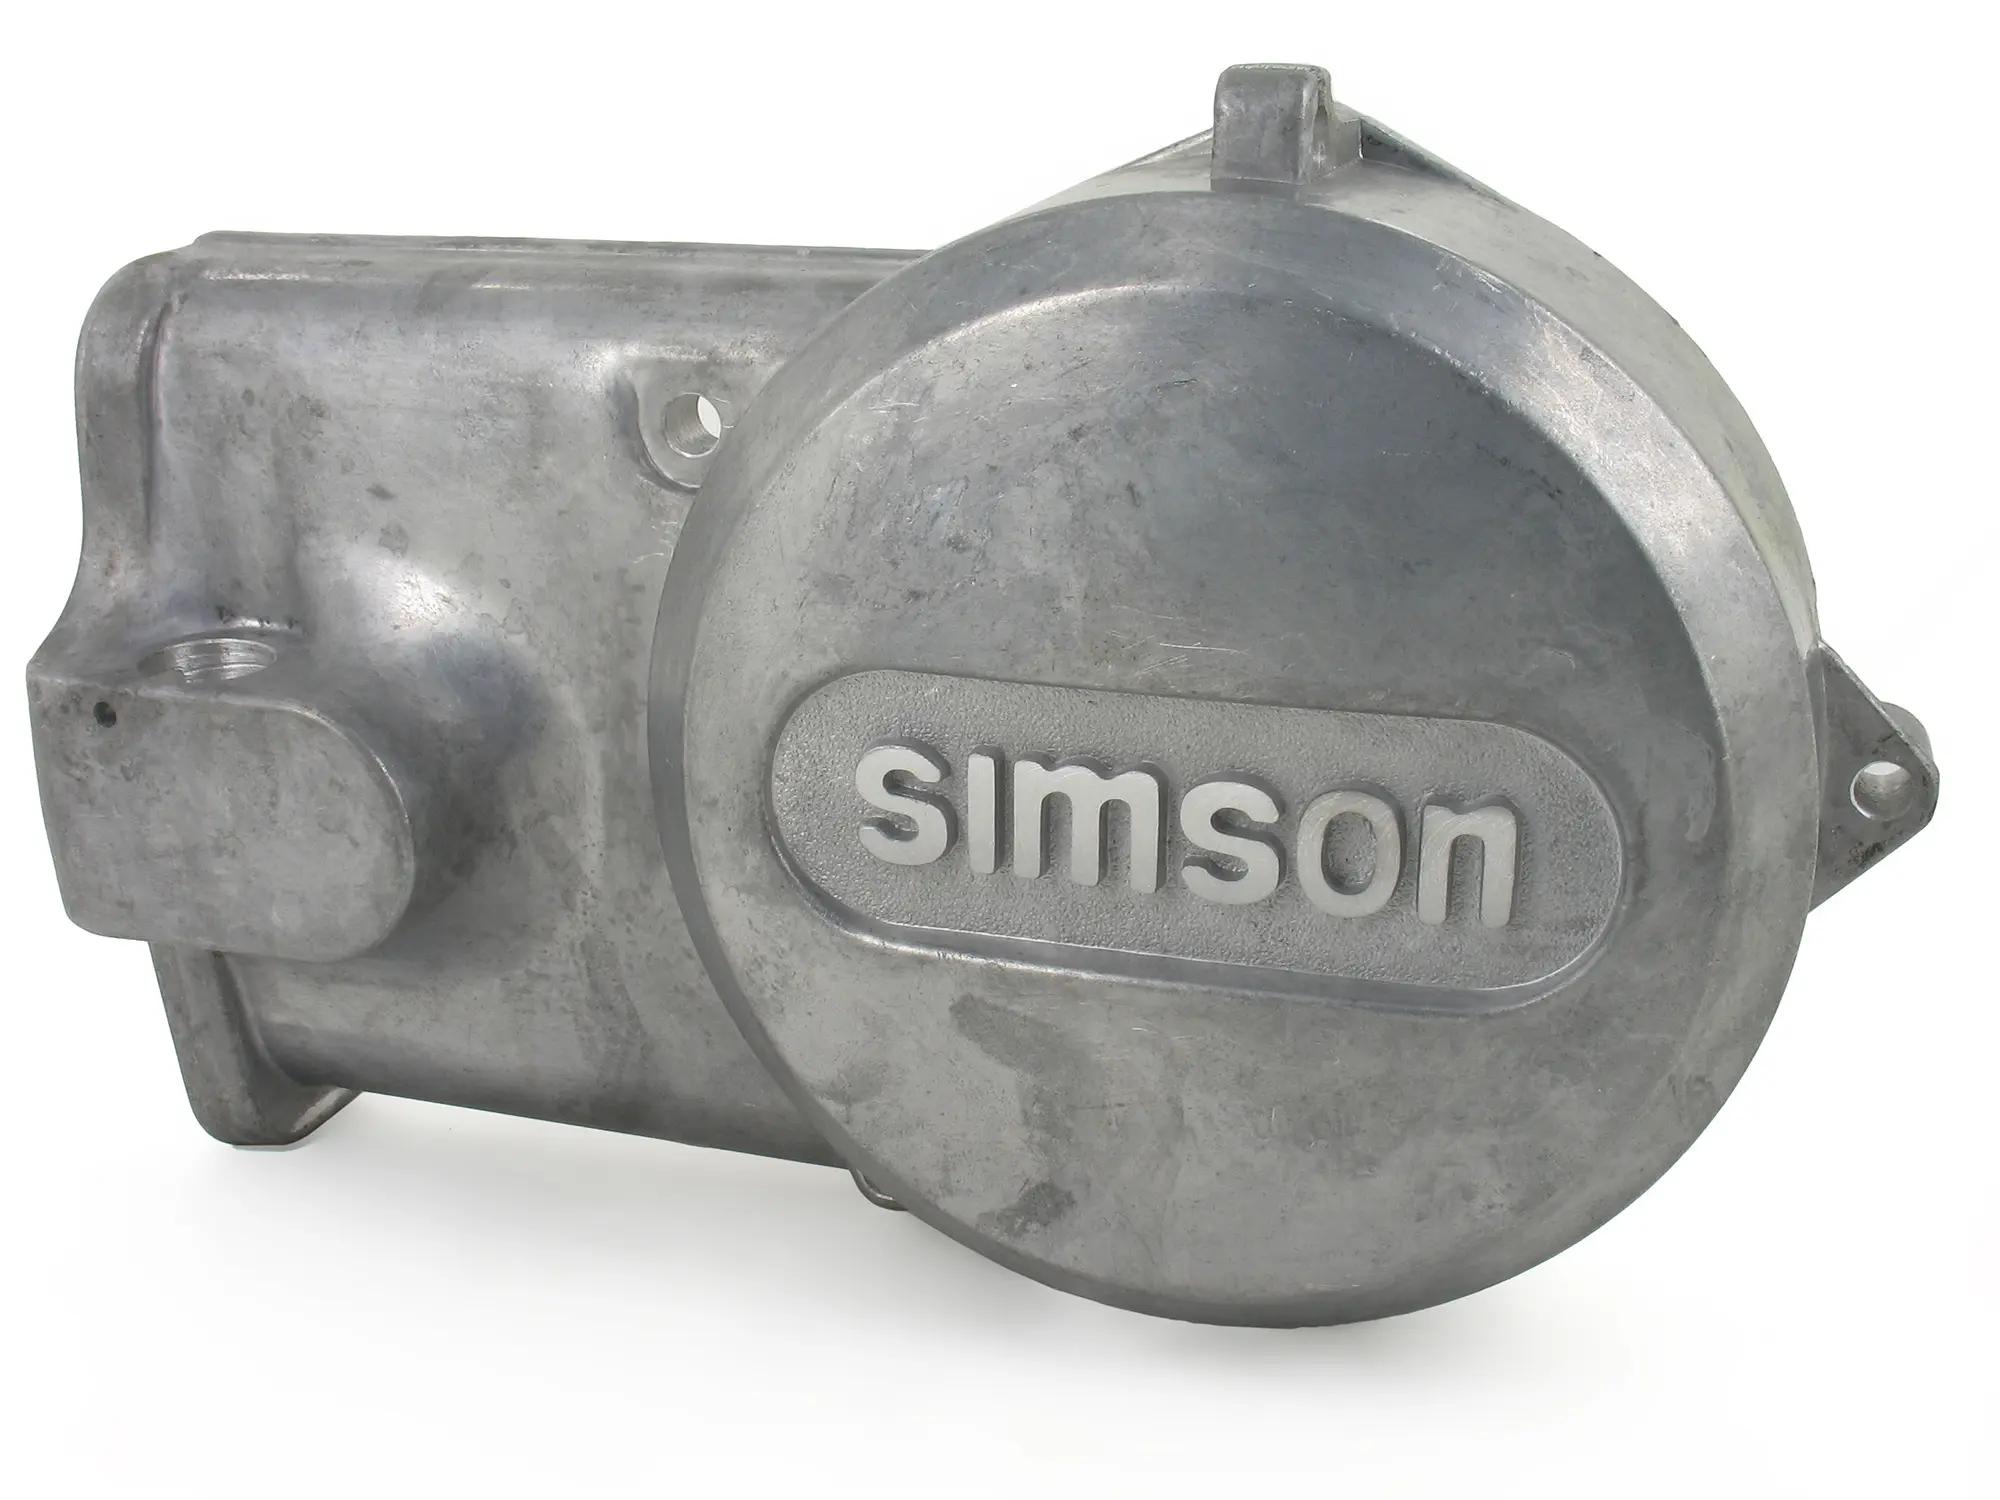 Lichtmaschinendeckel Alu-natur mit SIMSON Schriftzug - Simson